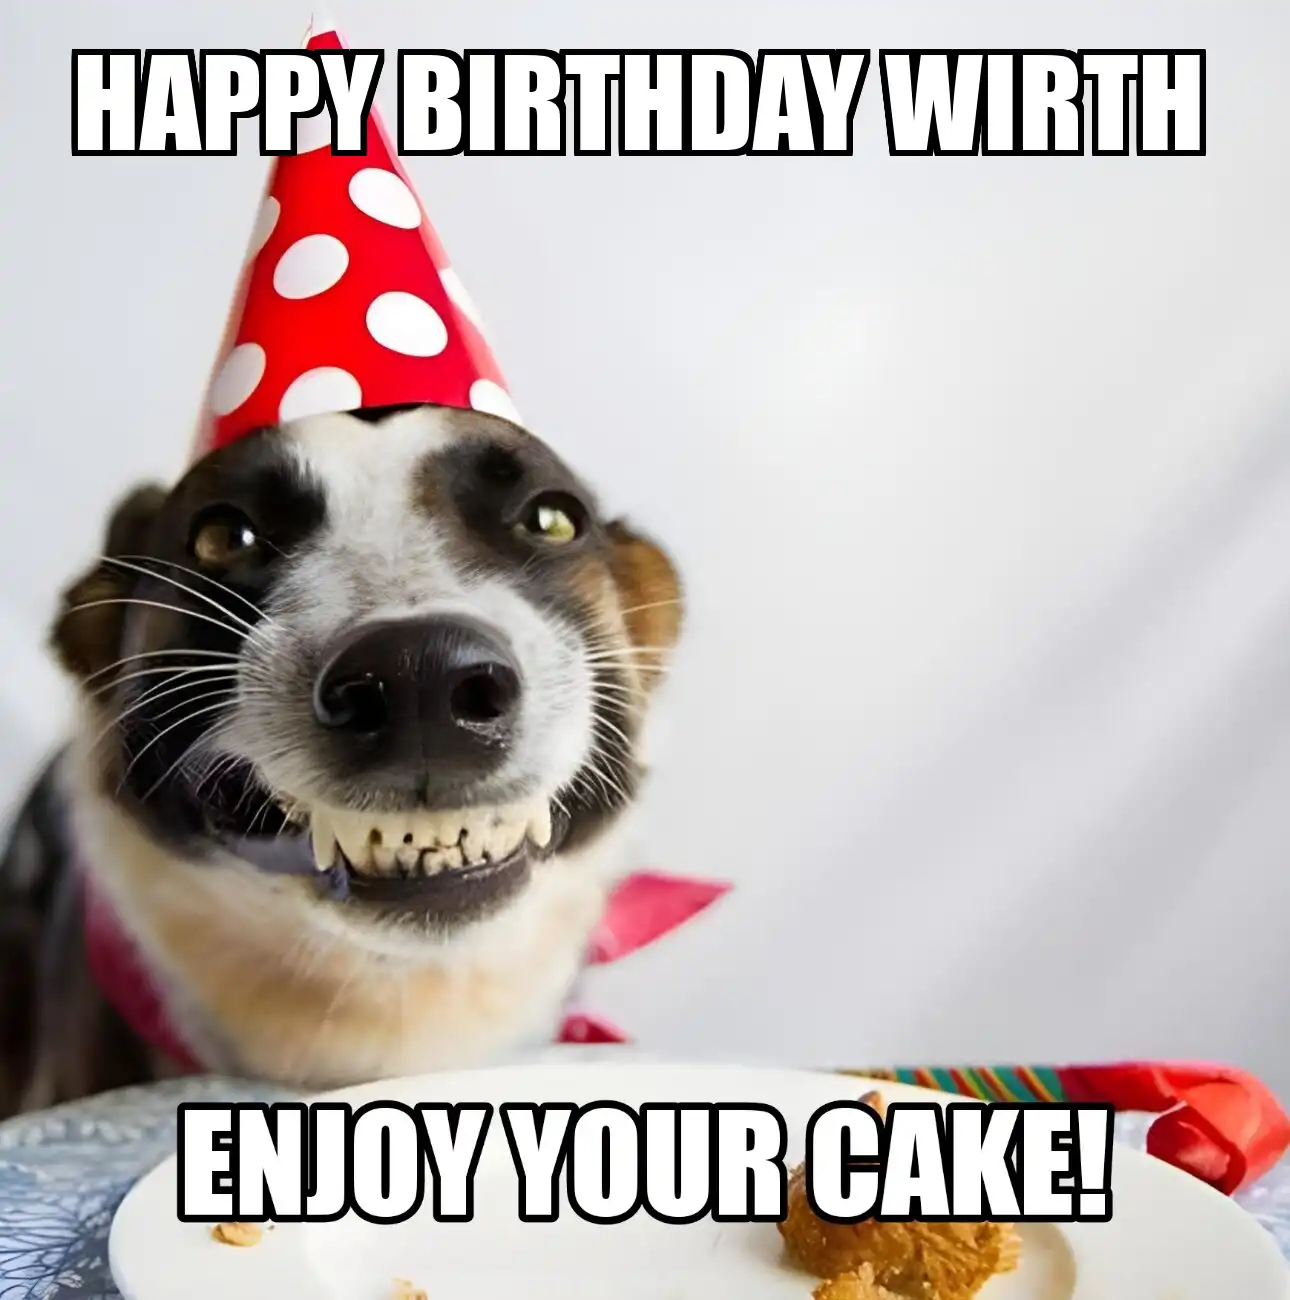 Happy Birthday Wirth Enjoy Your Cake Dog Meme